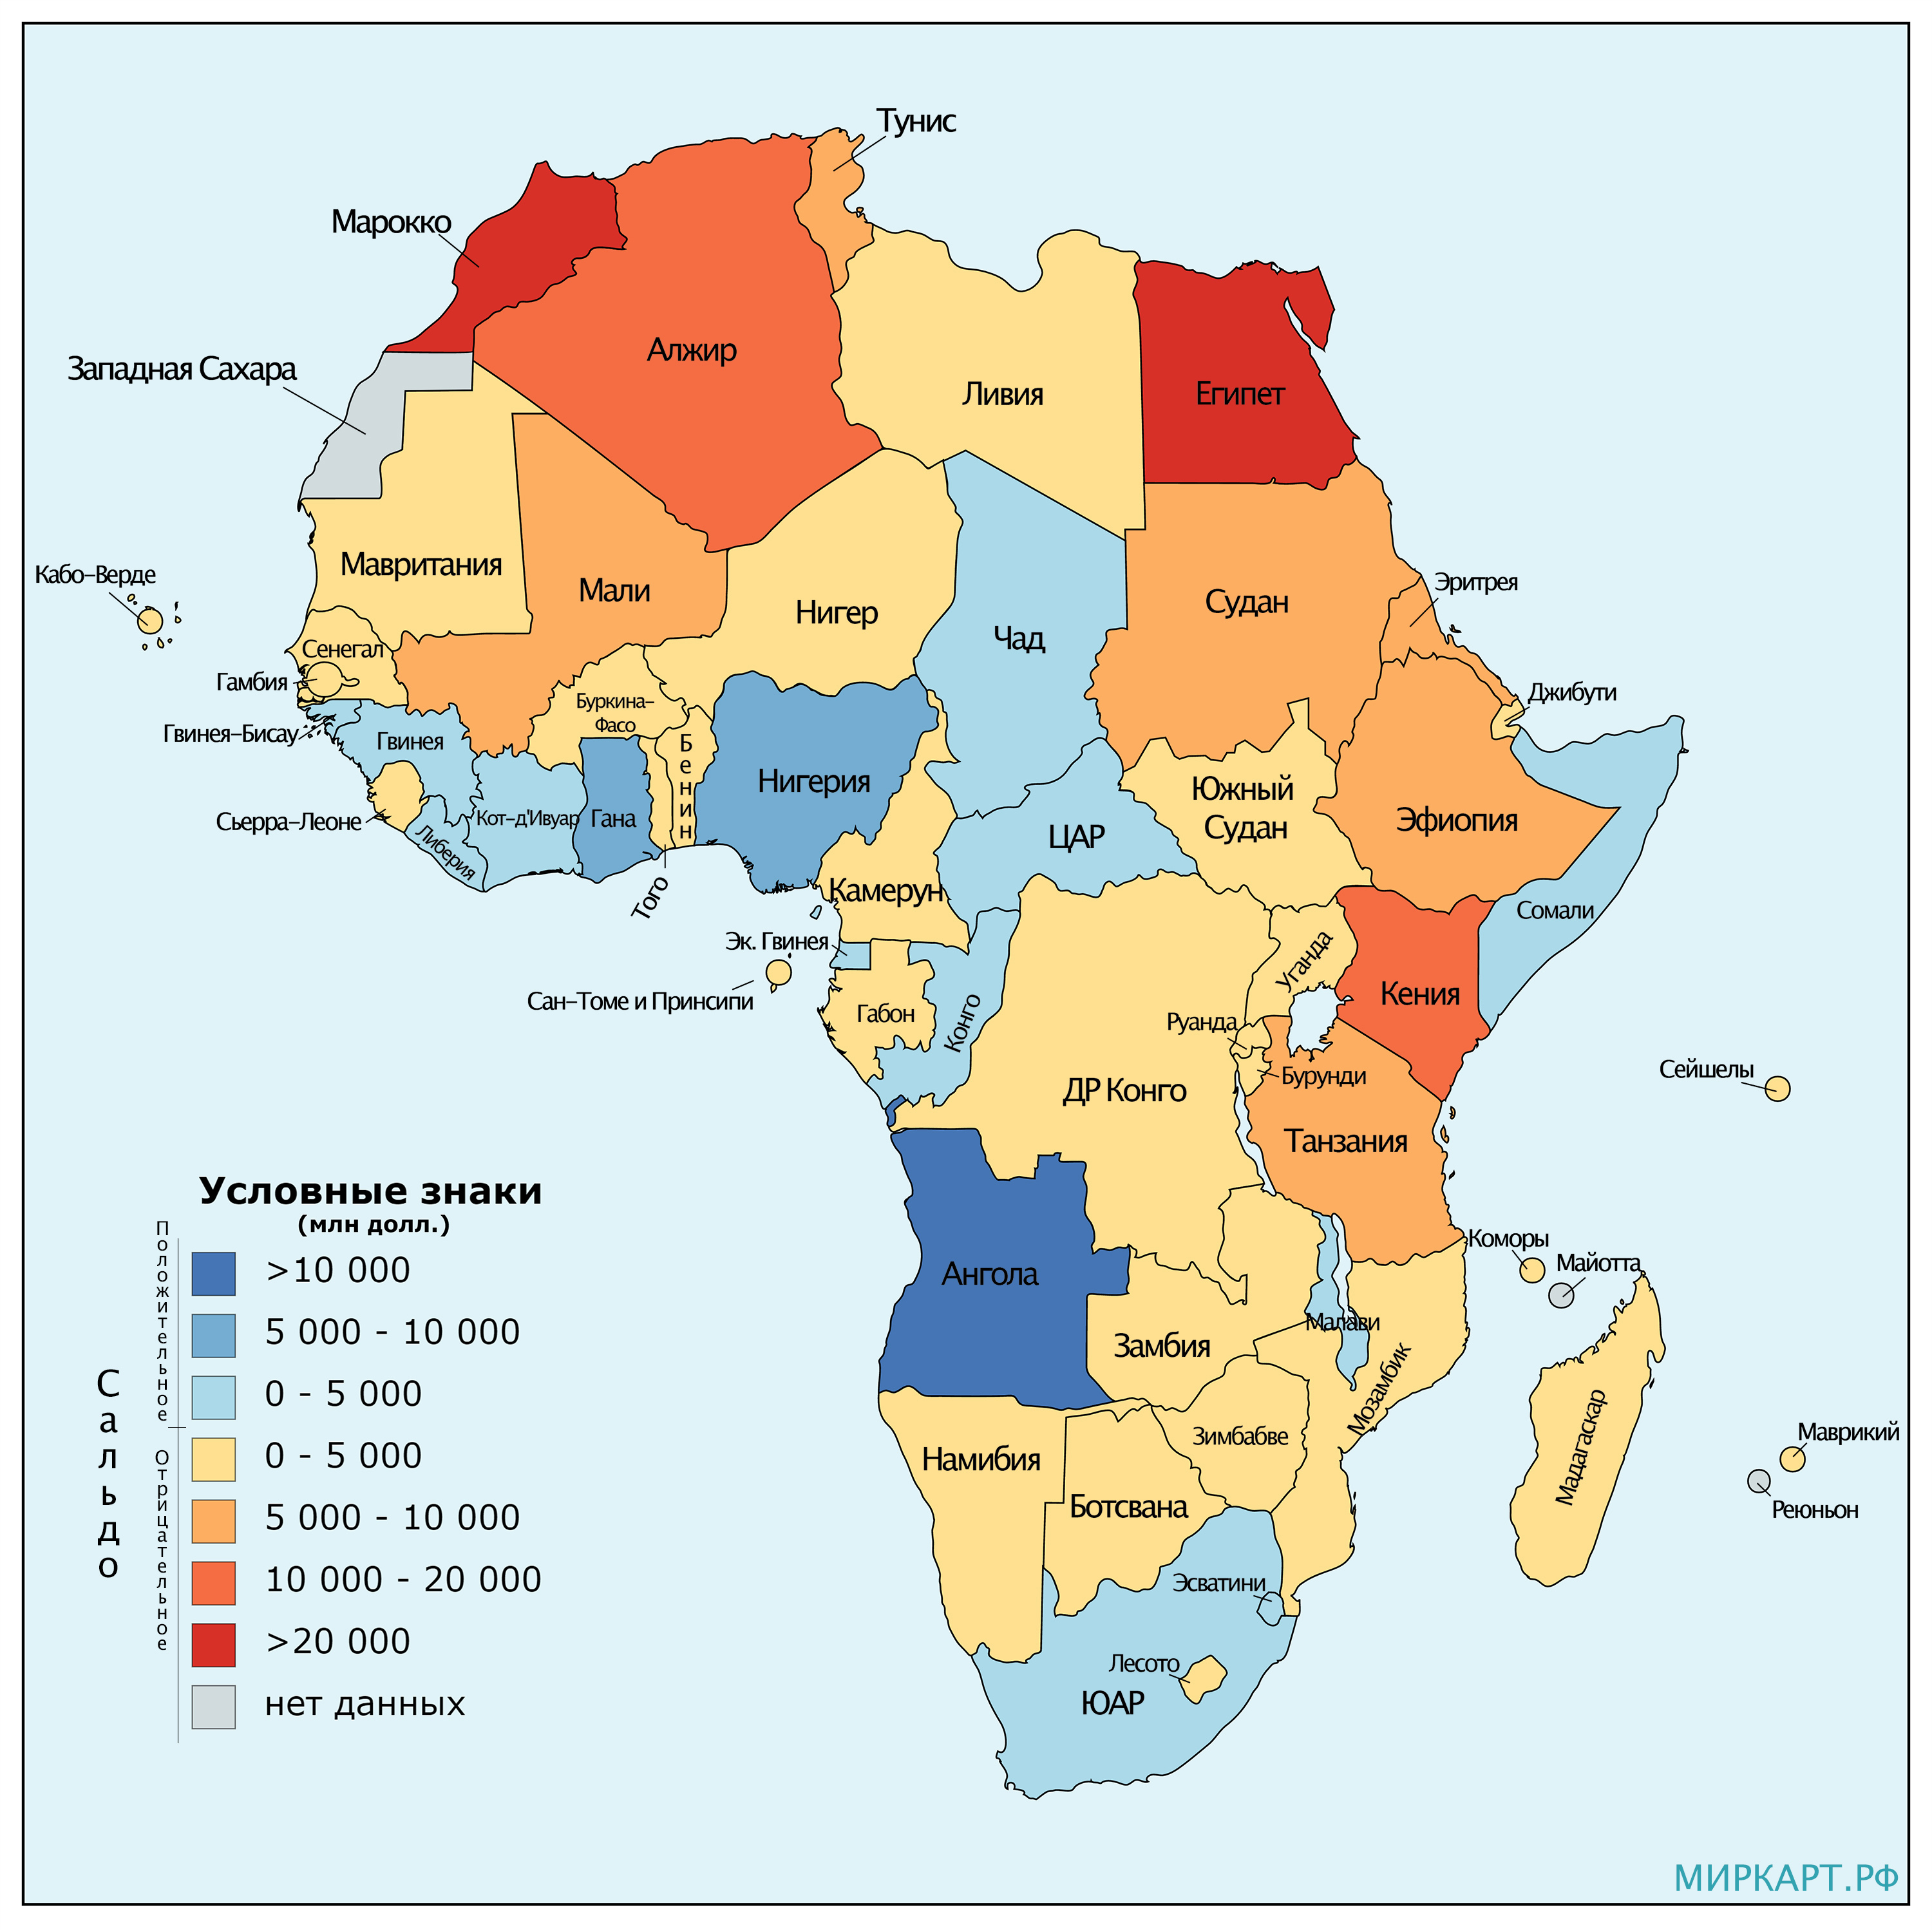 Сборник карт Африки различной тематики